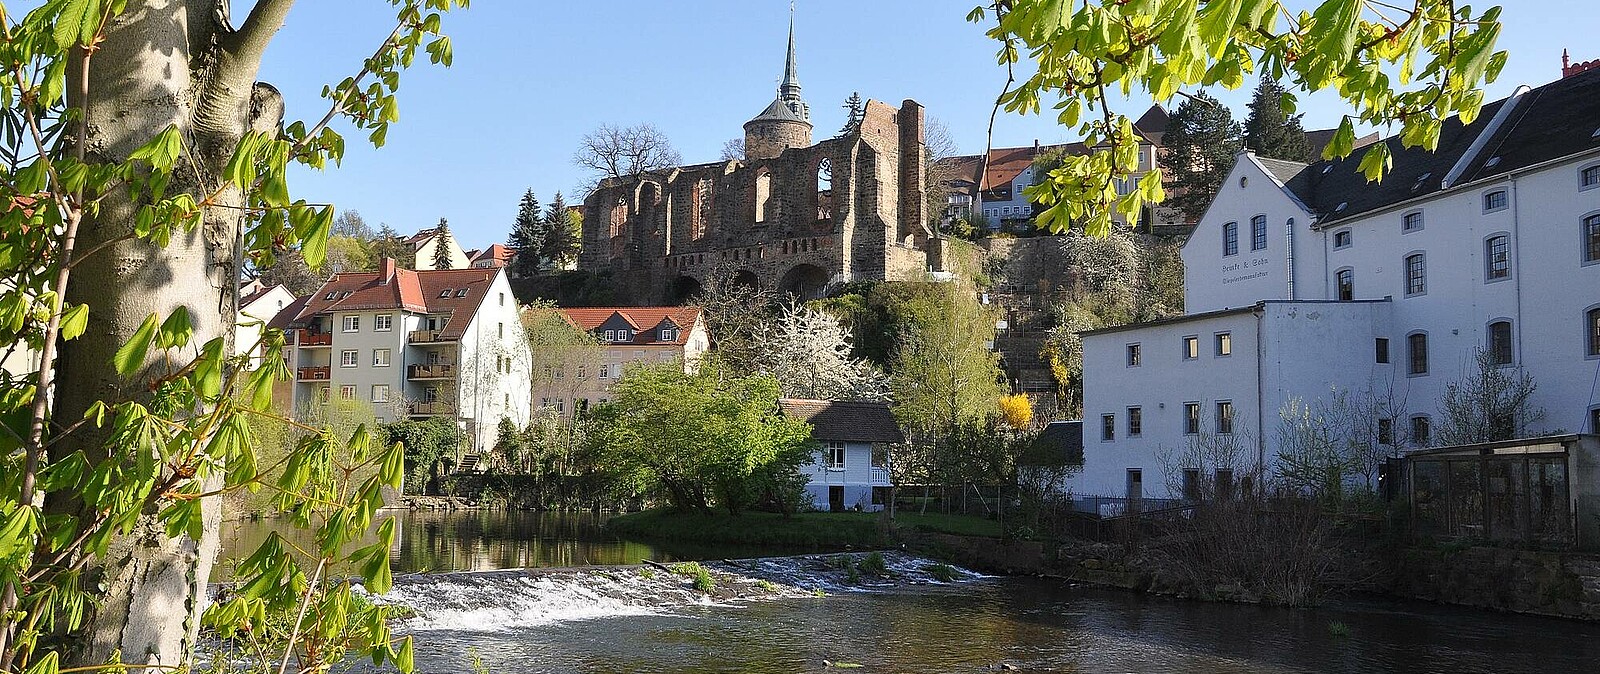 Bautzen mit seiner historischen Altstadt, der malerischen Lage über der Spree und den vielen märchenhaften Türmen ist für viele Menschen das Sinnbild einer mittelalterlichen Stadt. Gäste aus ganz Deutschland finden hier eine einzigartige Atmosphäre 